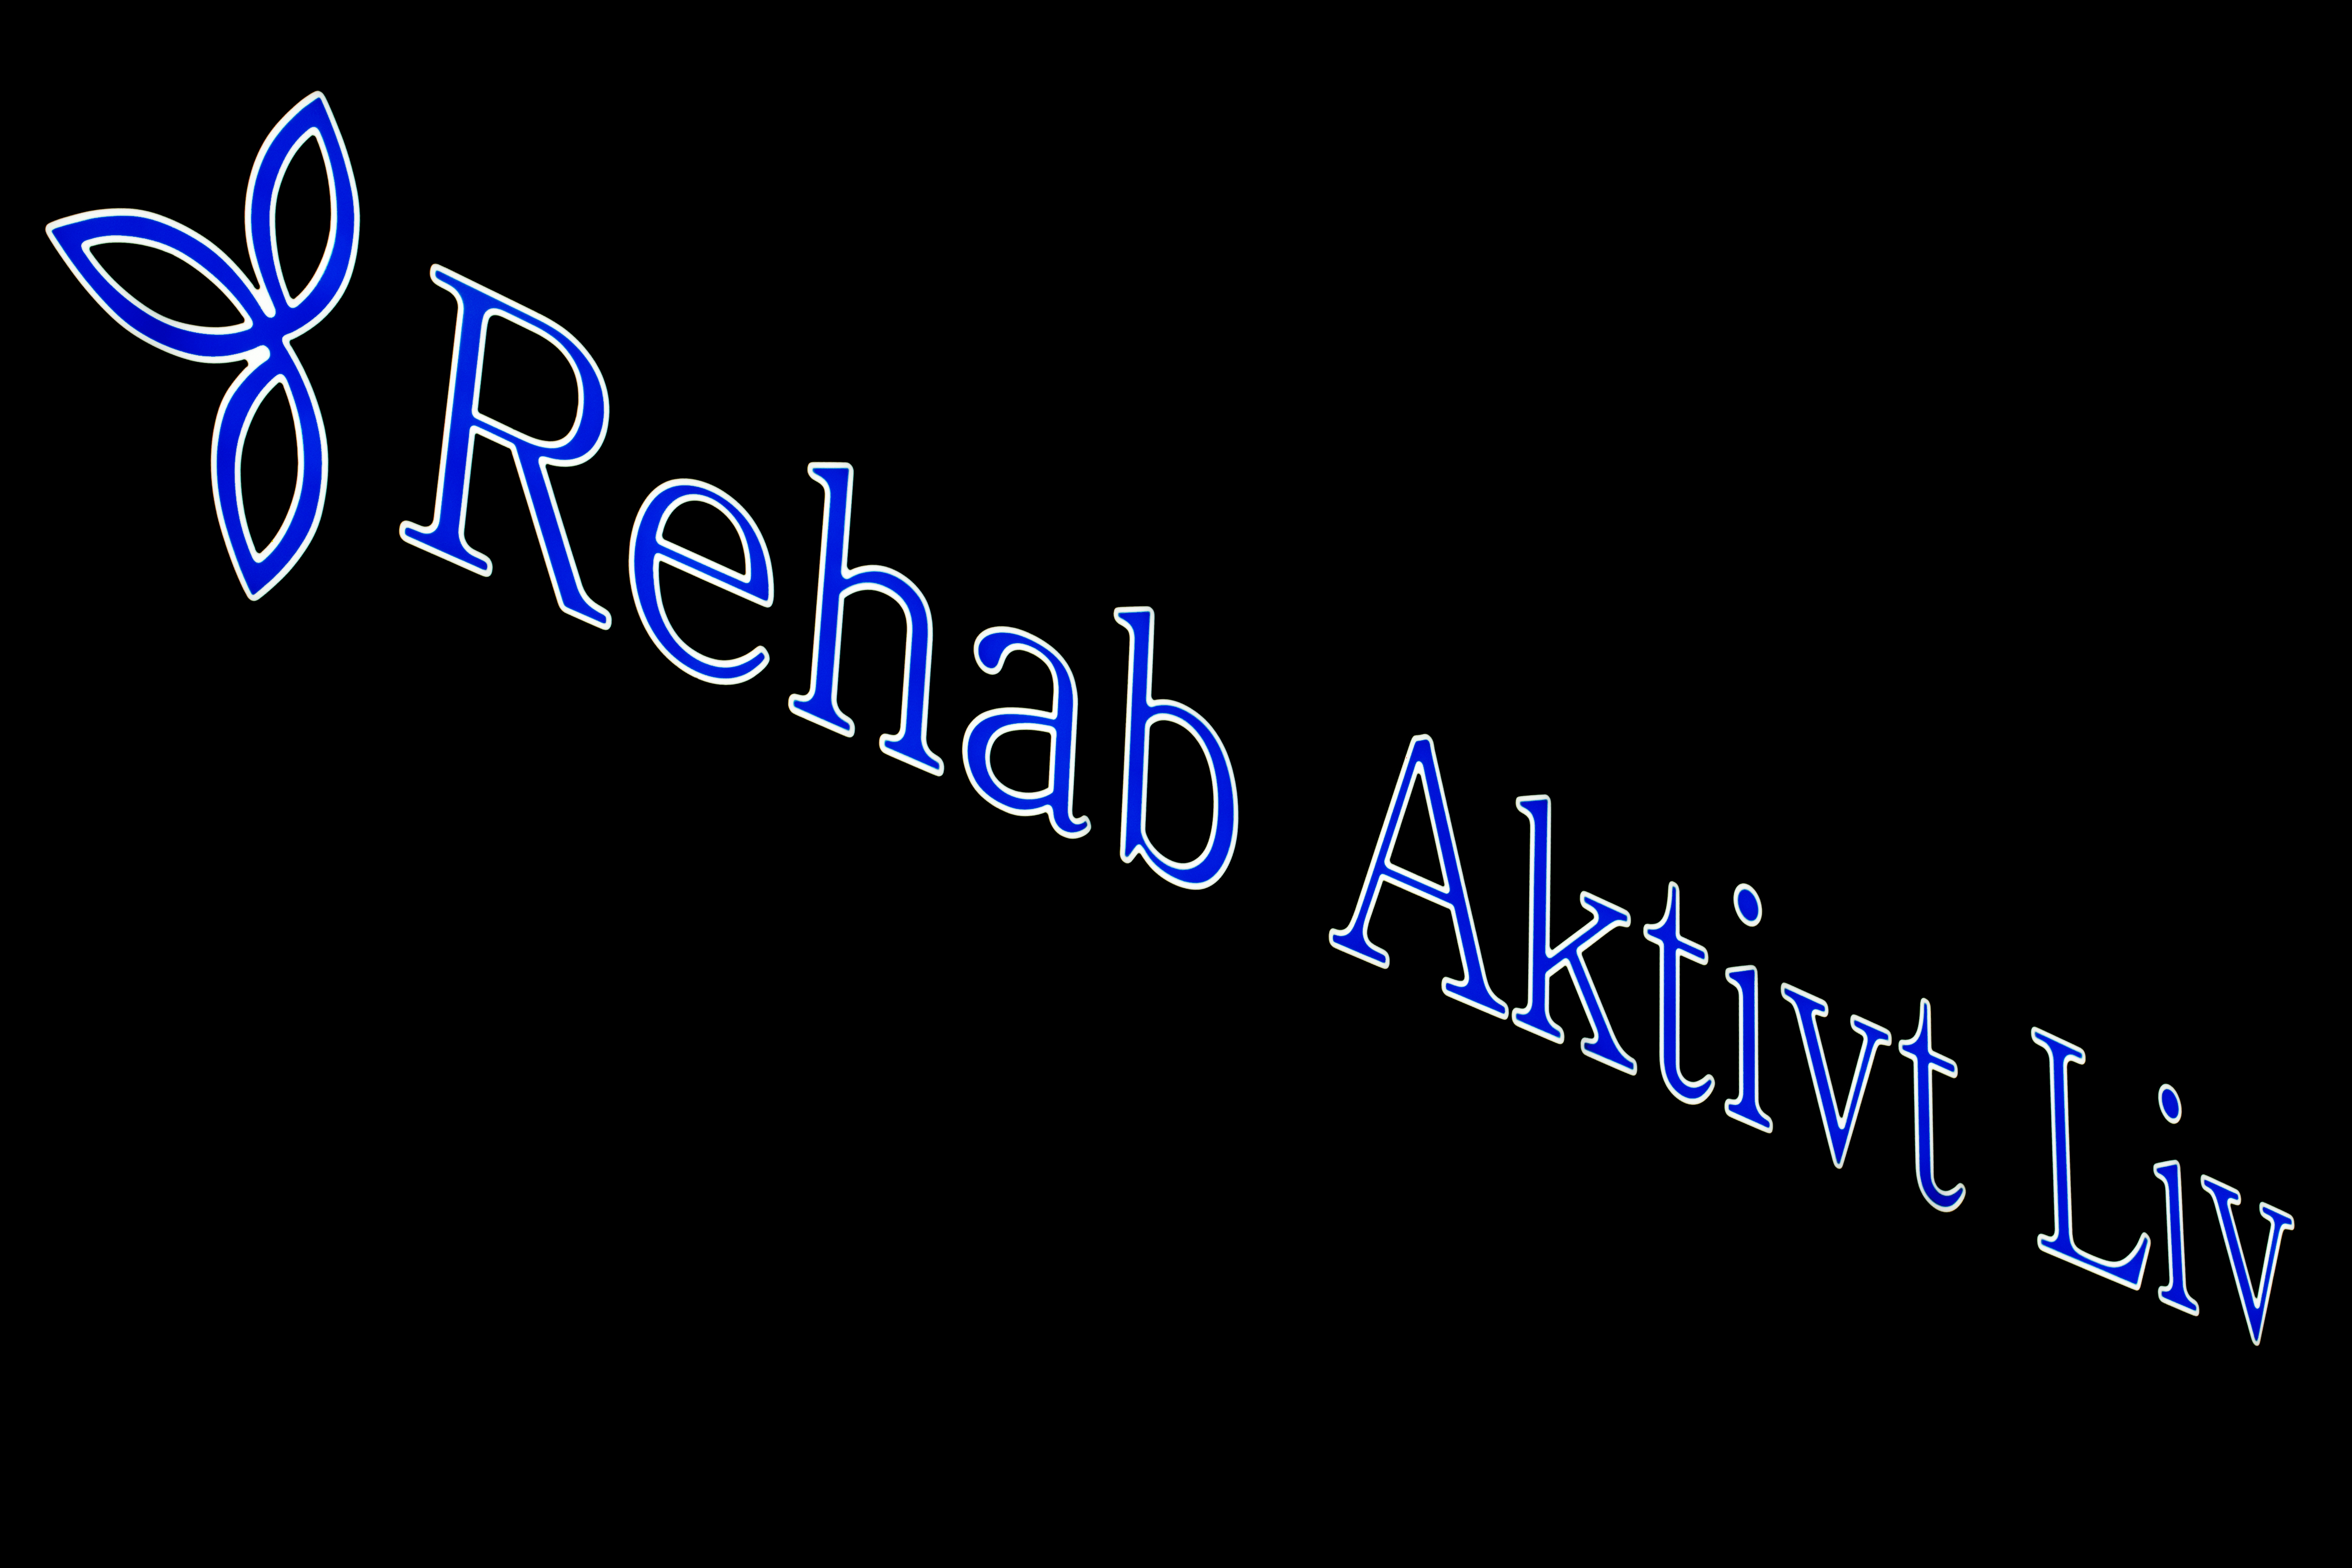 Rehab Aktivt Liv - Upplands Väsby - Ljusskylt